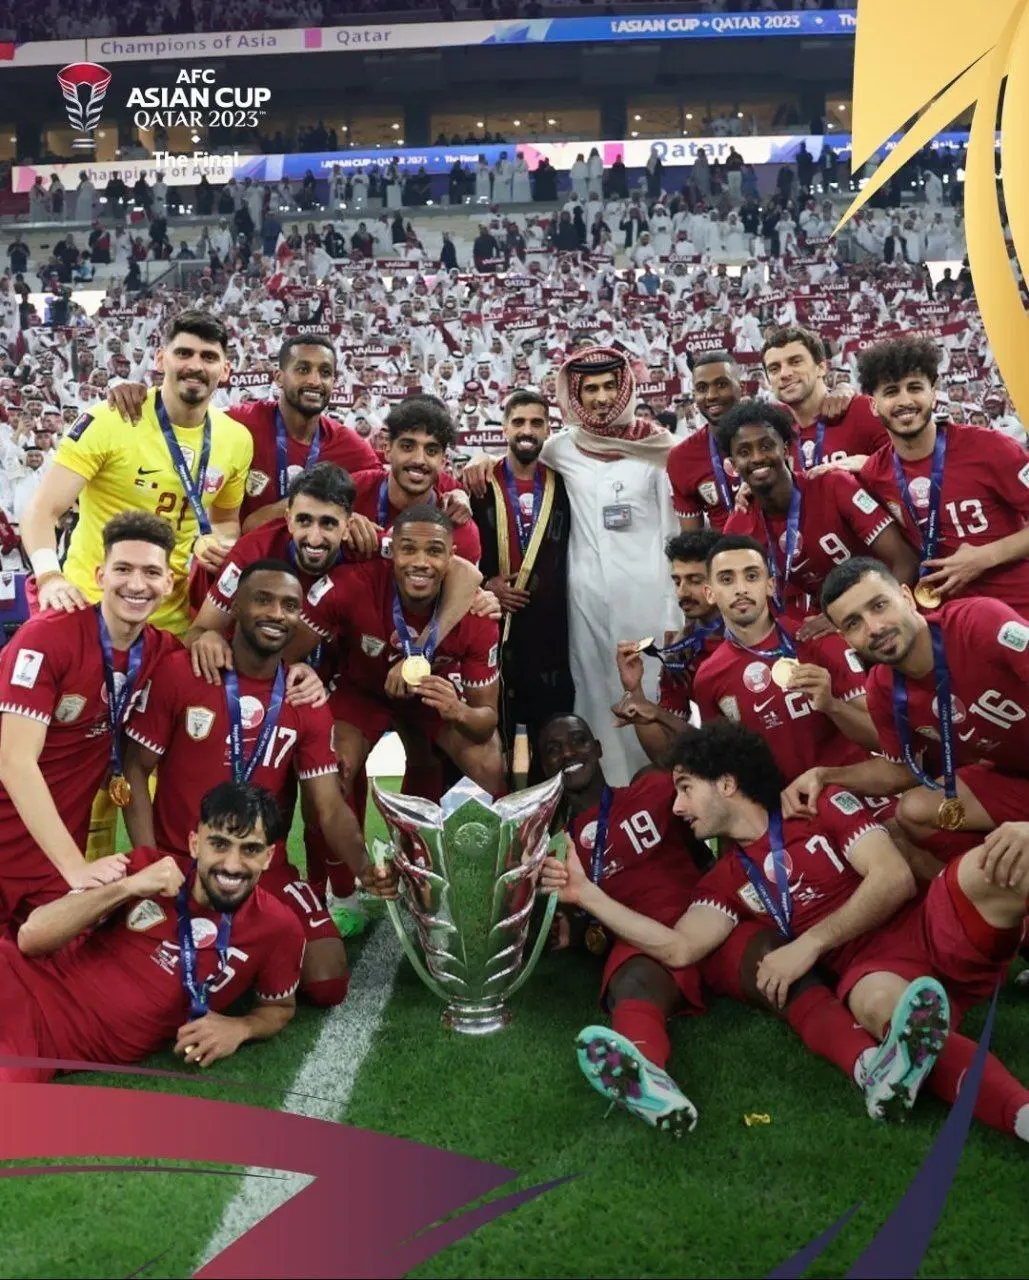 جایزه امیر قطر به بازیکنان تیم ملی که همه را شوکه کرد